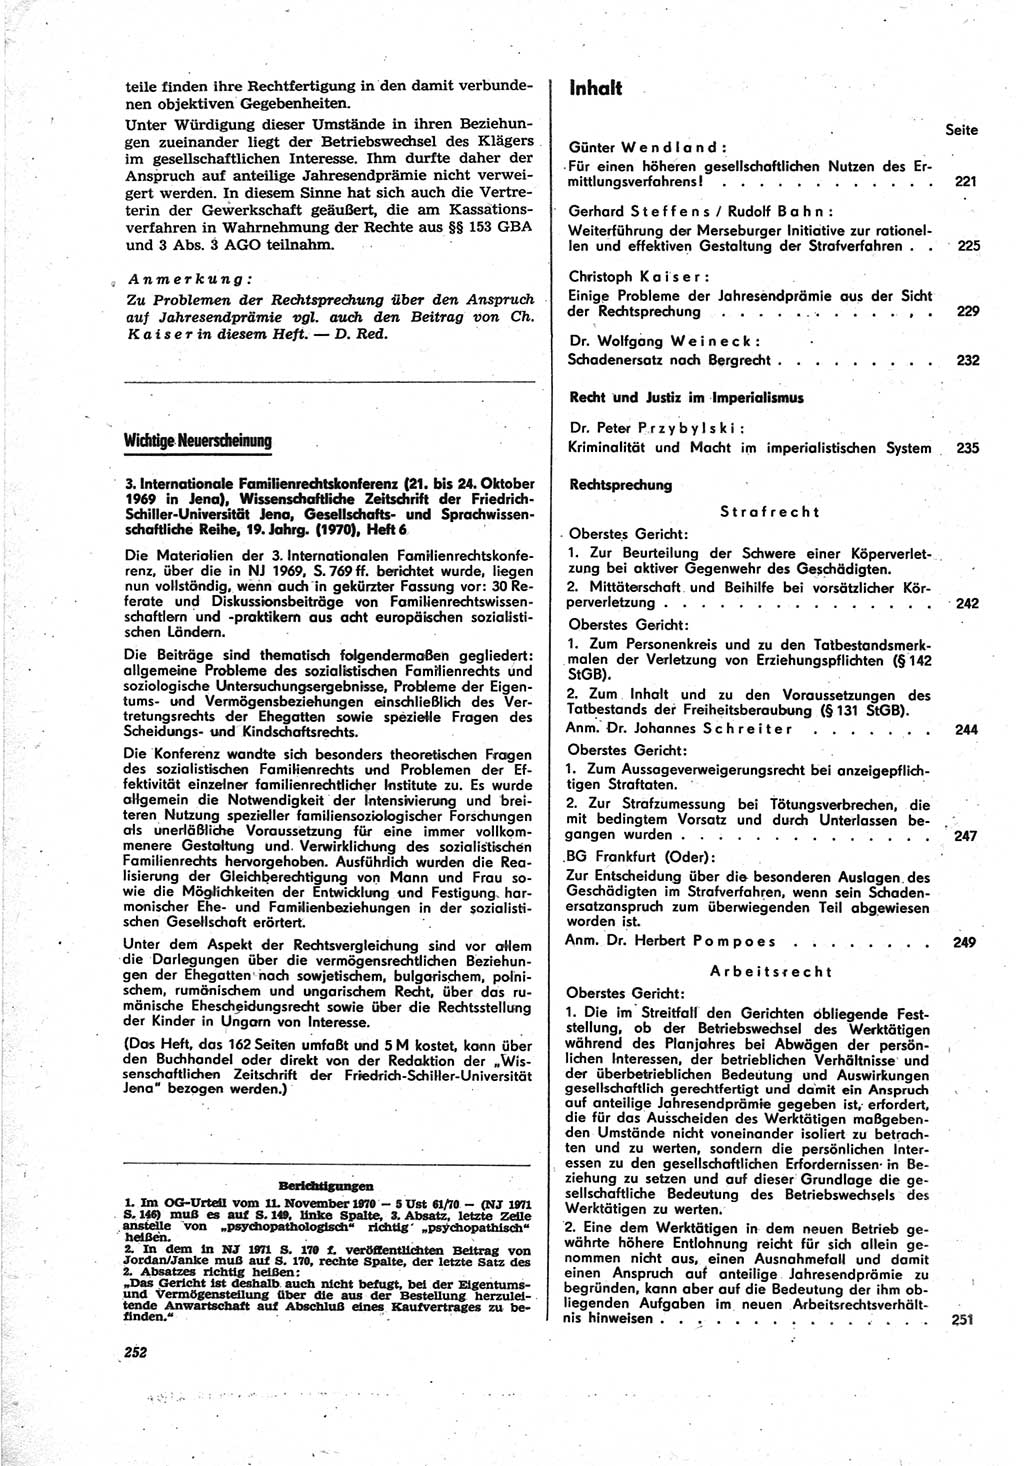 Neue Justiz (NJ), Zeitschrift für Recht und Rechtswissenschaft [Deutsche Demokratische Republik (DDR)], 25. Jahrgang 1971, Seite 252 (NJ DDR 1971, S. 252)